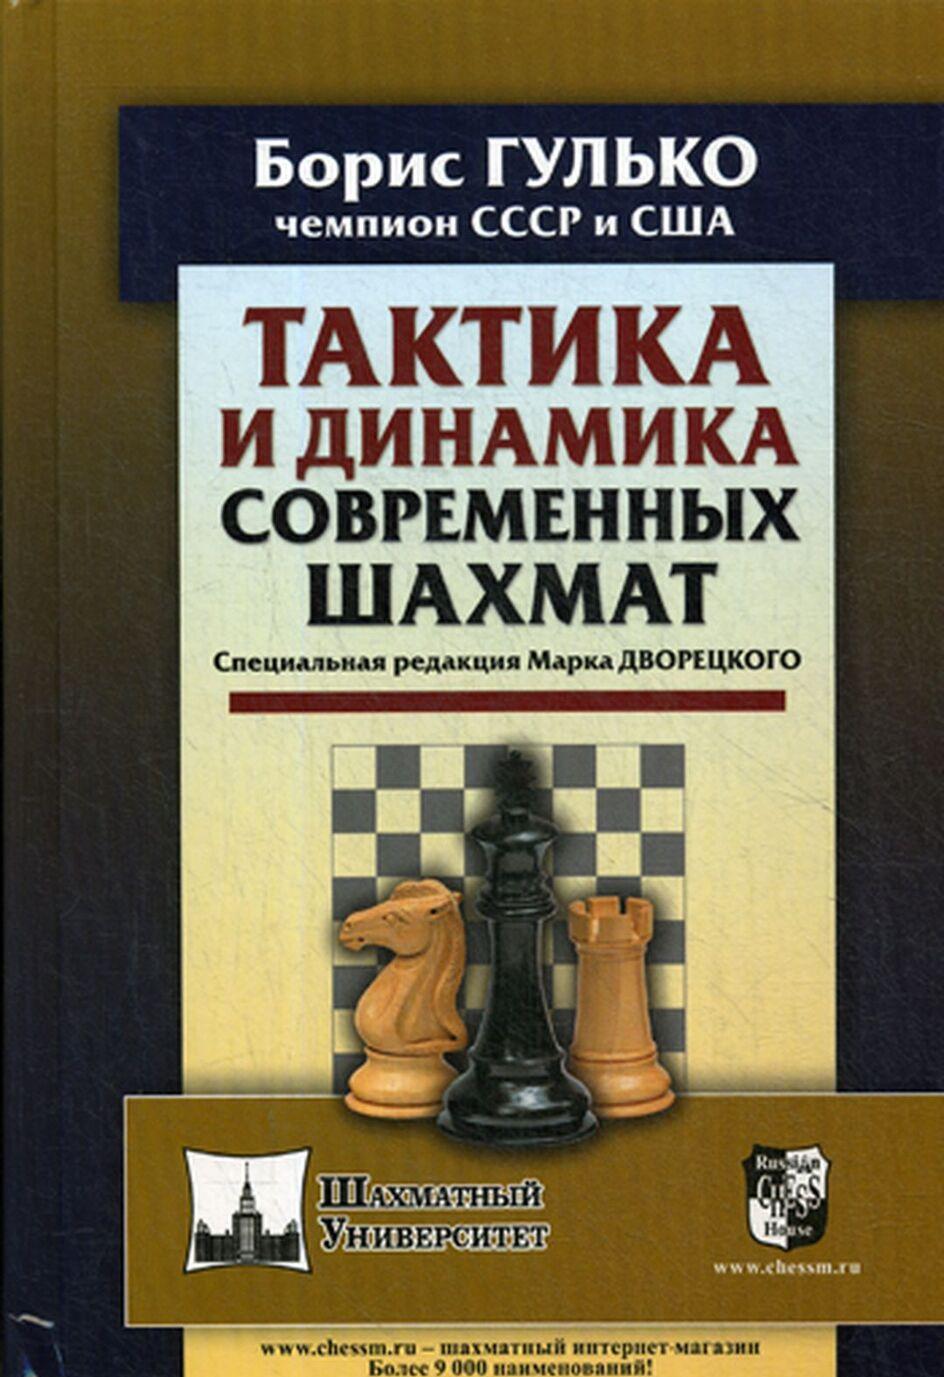 Carte Тактика и динамика современных шахмат Б.Ф. Гулько